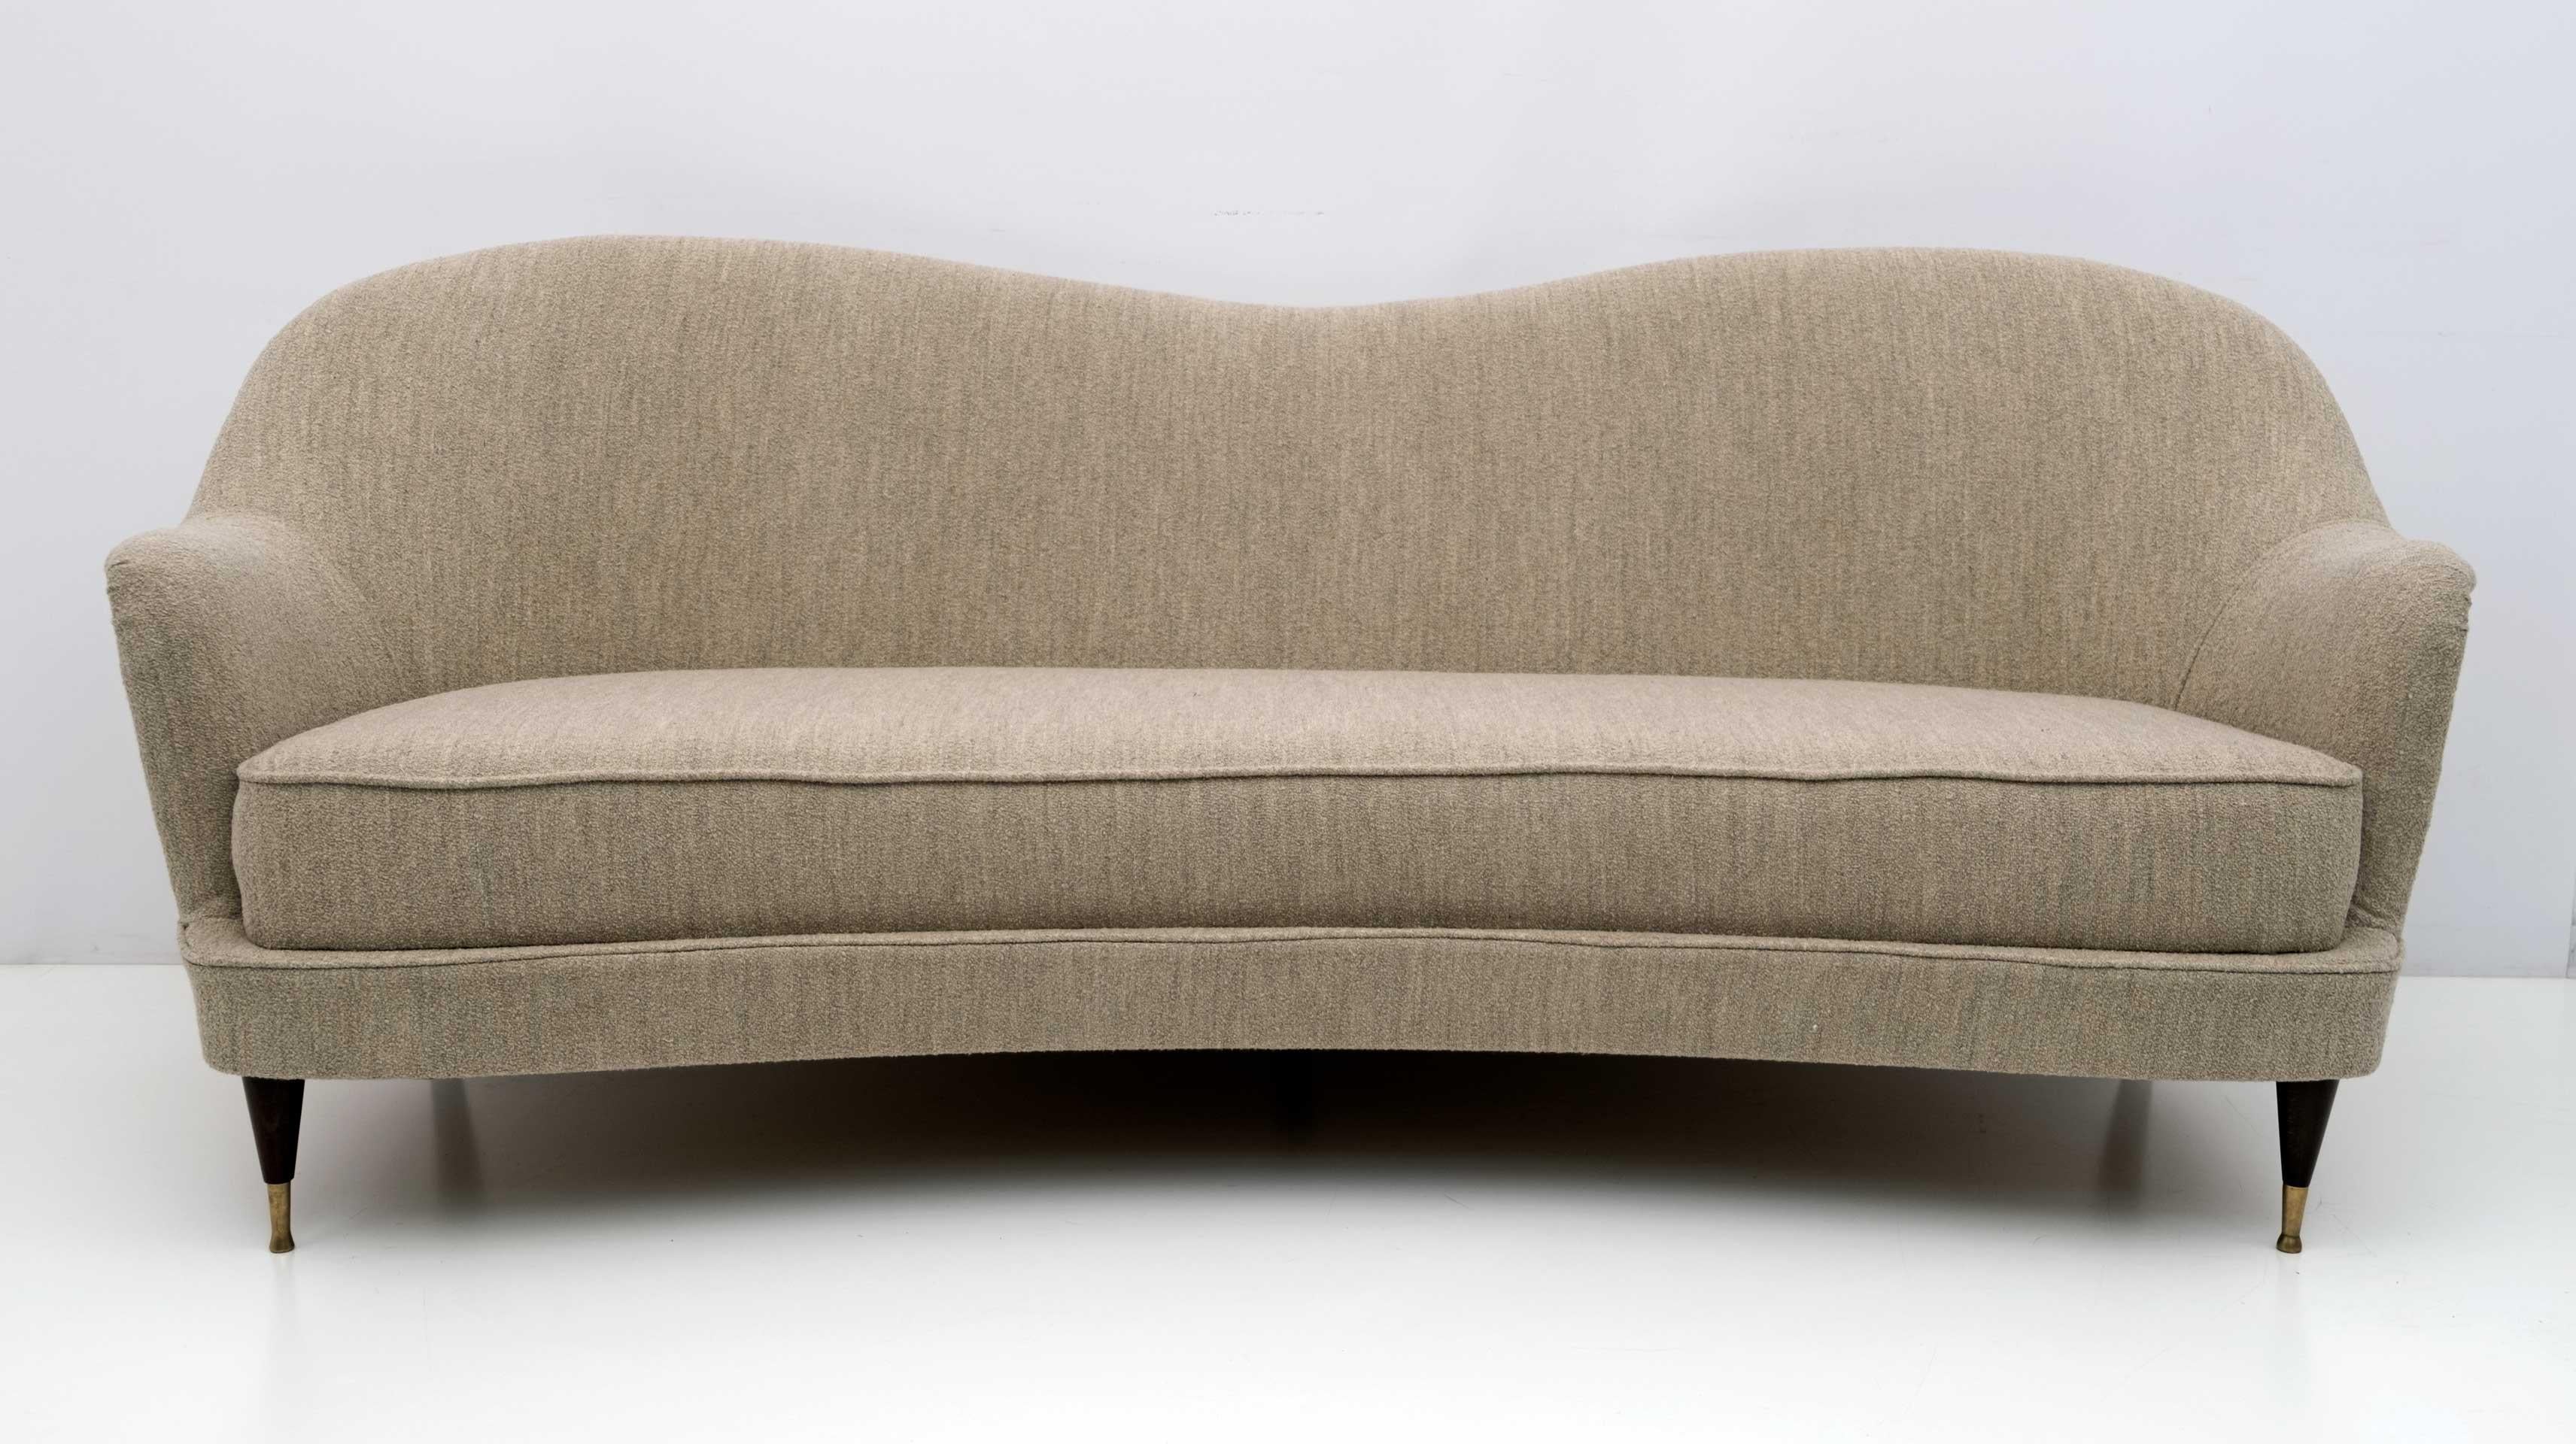 Canapé Collectional conçu par Gio Ponti pour la société de fabrication Isa Bergamo à la fin des années 1950.
Les fauteuils ont été restaurés et la tapisserie a été refaite en tissu Boucle couleur chanvre.
Les deux fauteuils sont également